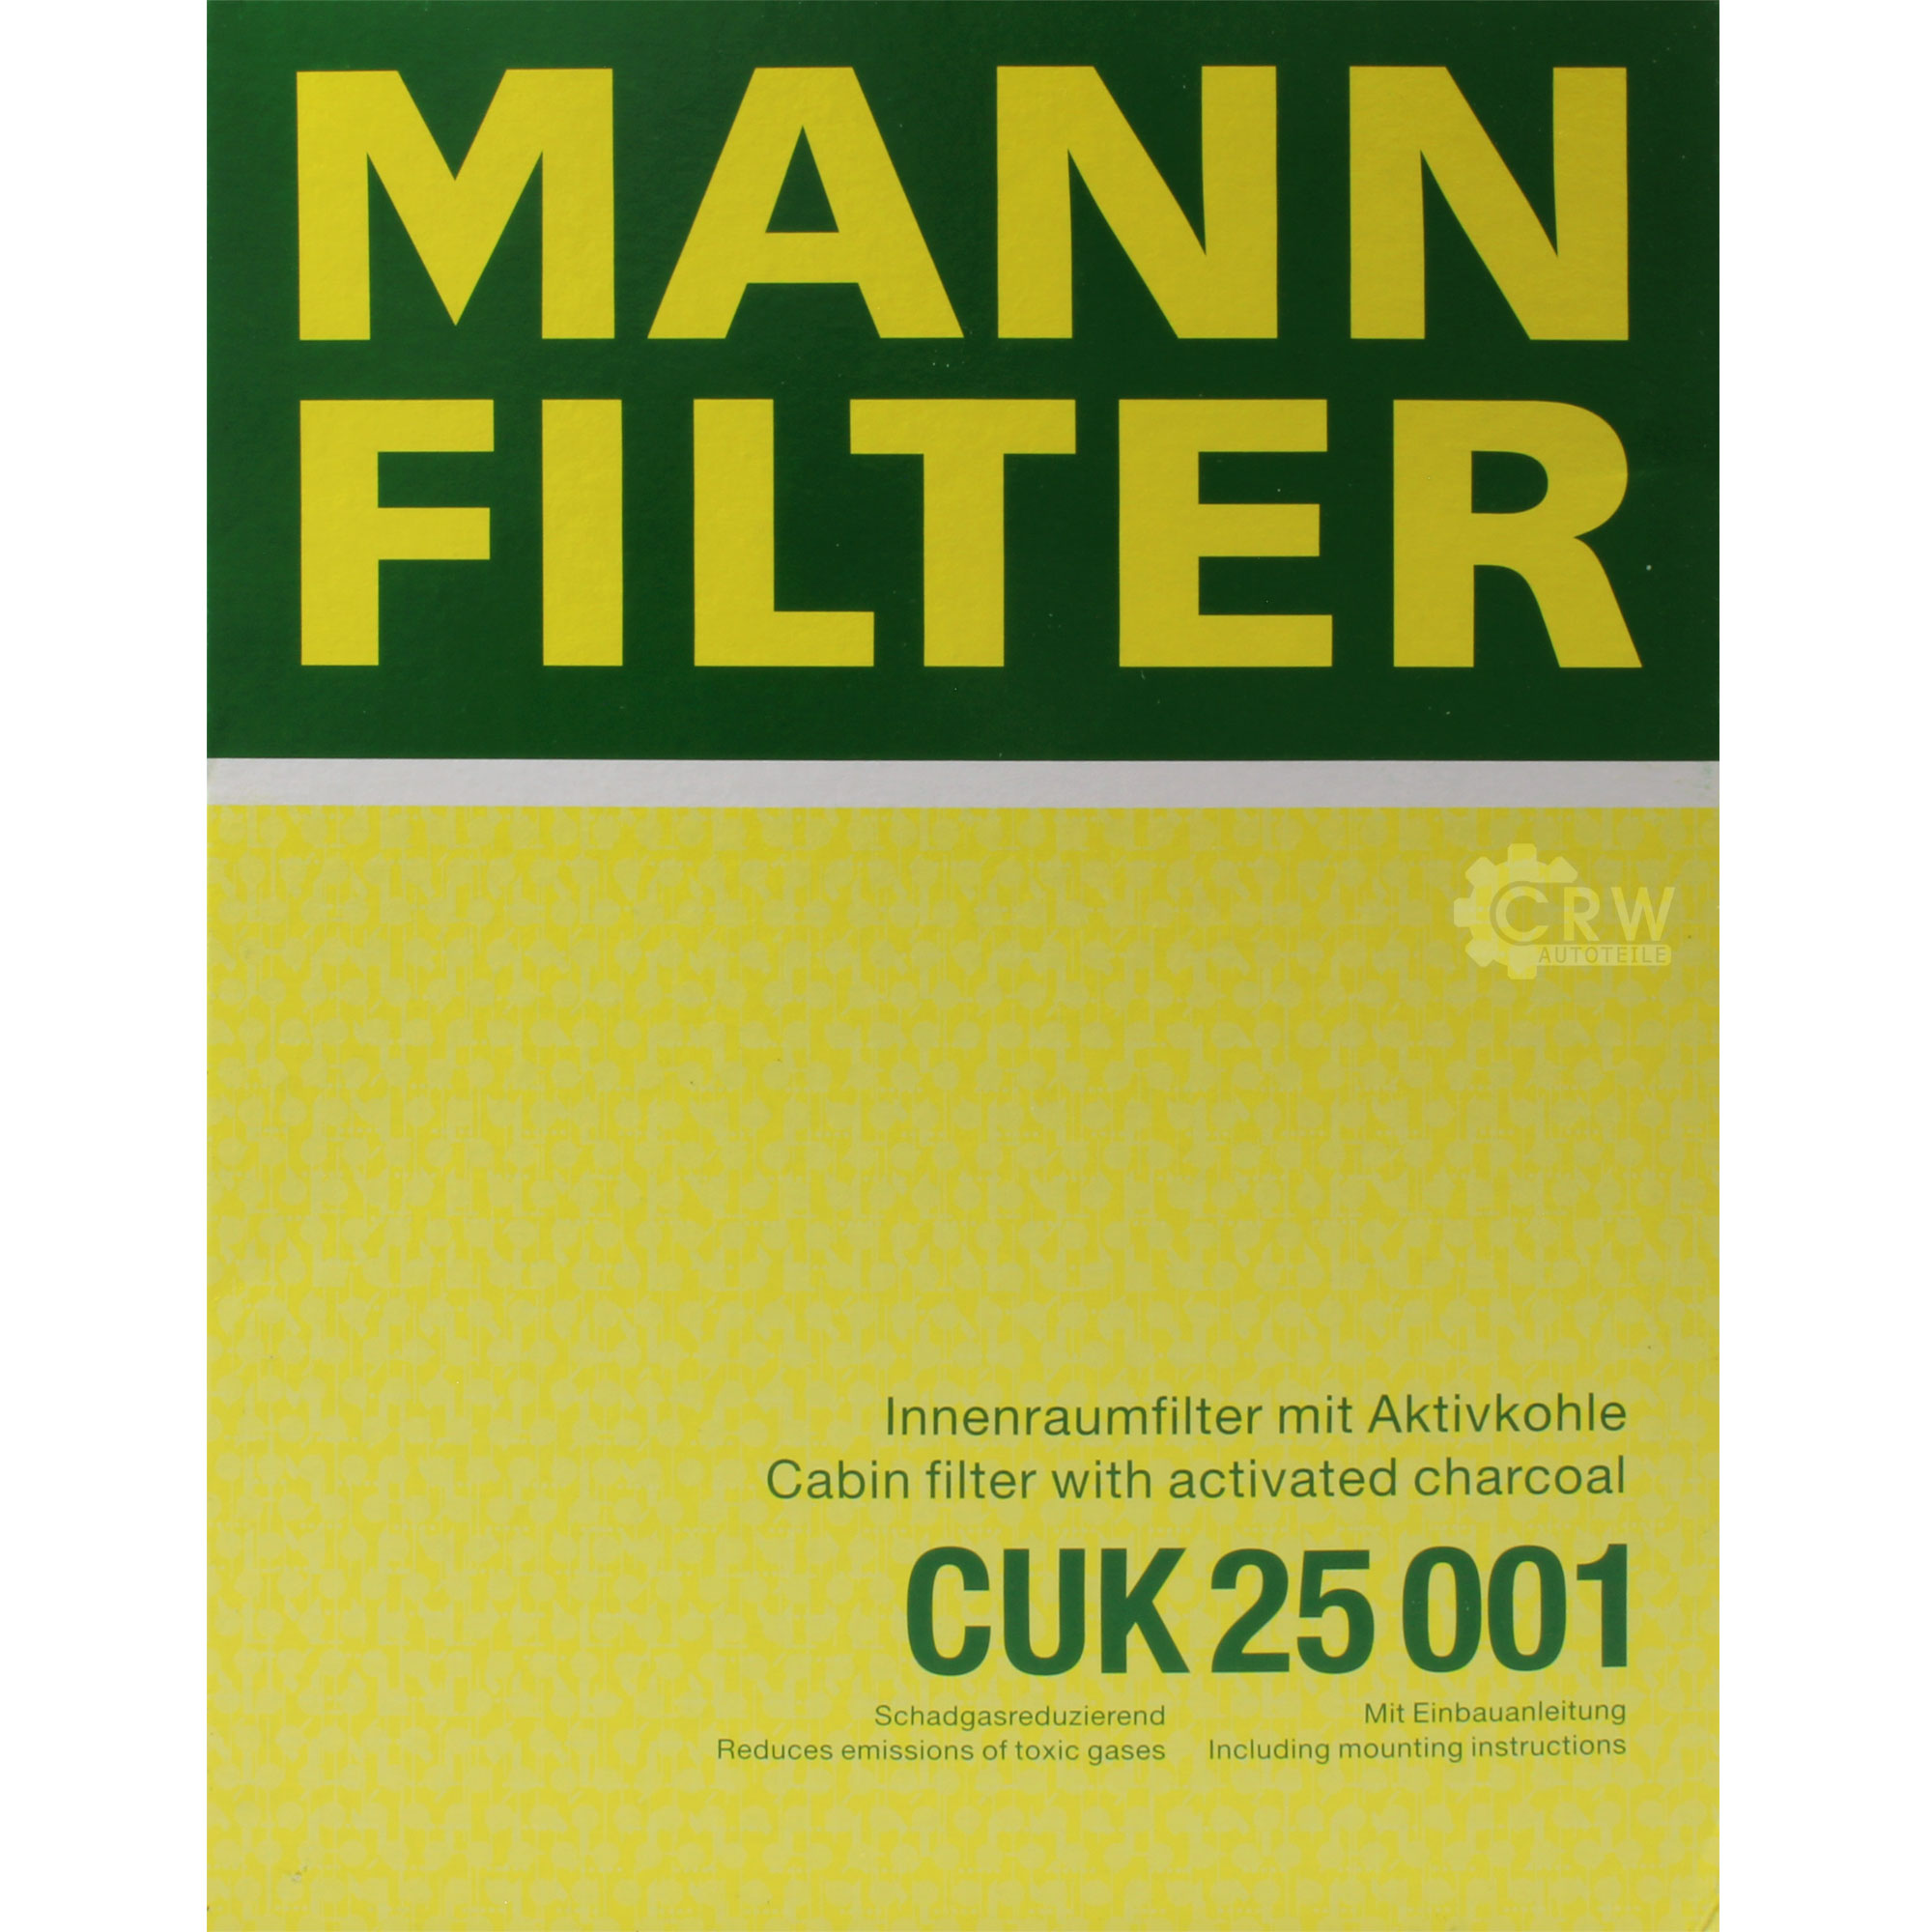 MANN-FILTER Innenraumfilter Pollenfilter Aktivkohle CUK 25 001